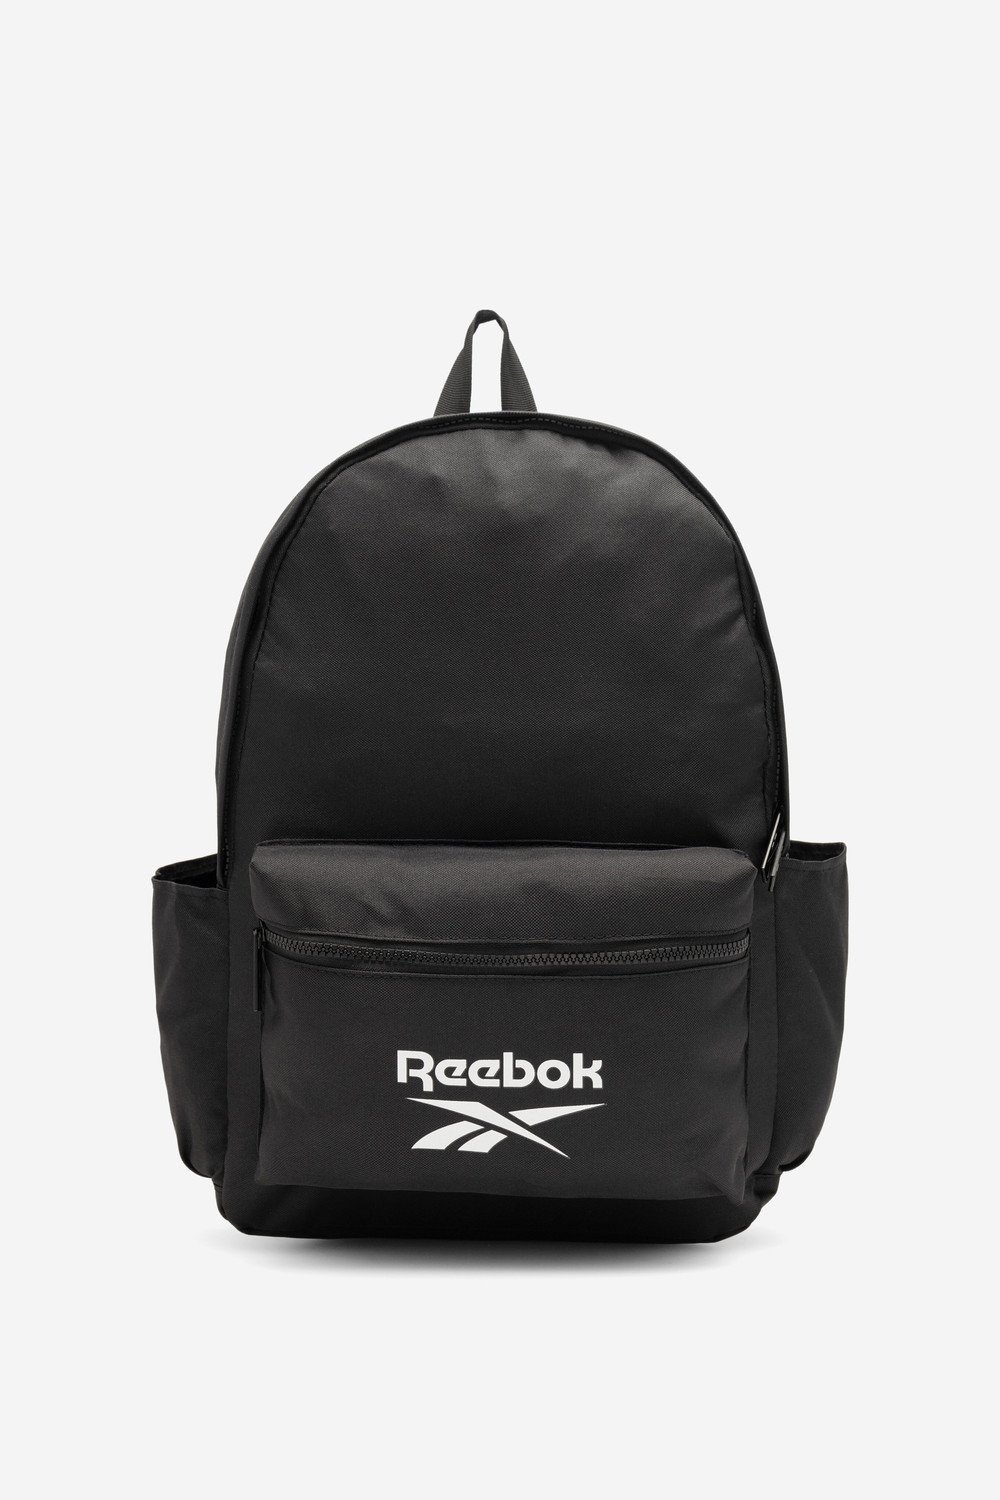 Batohy a tašky Reebok RBK-P-001-CCC